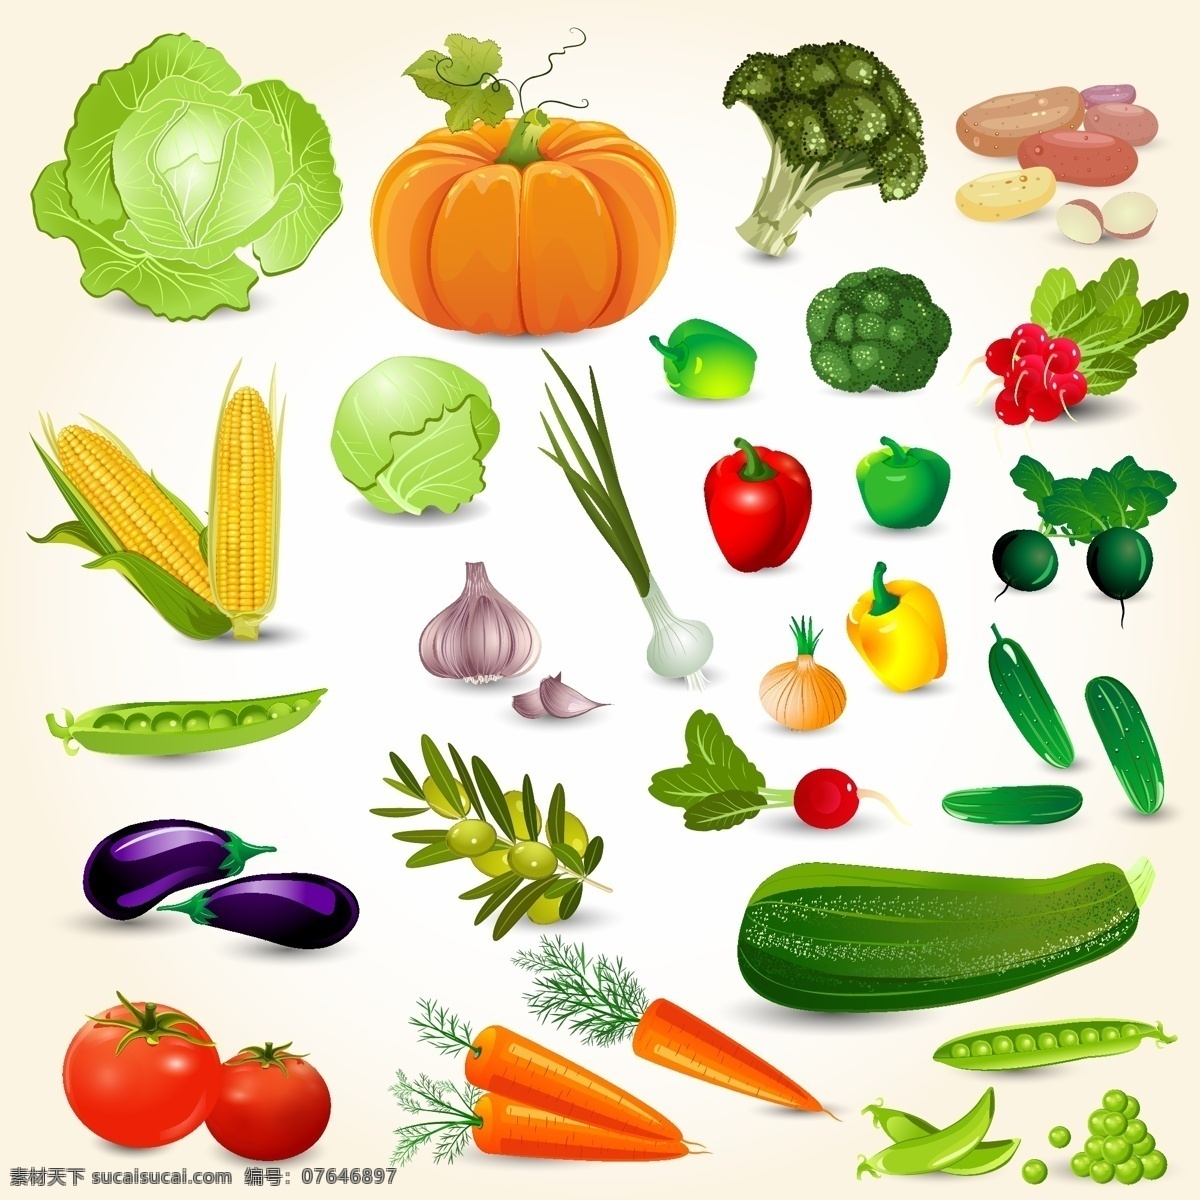 新鲜 美味 蔬菜 水果 插画 静物 卷芯菜 茄子 胡萝卜 西兰花